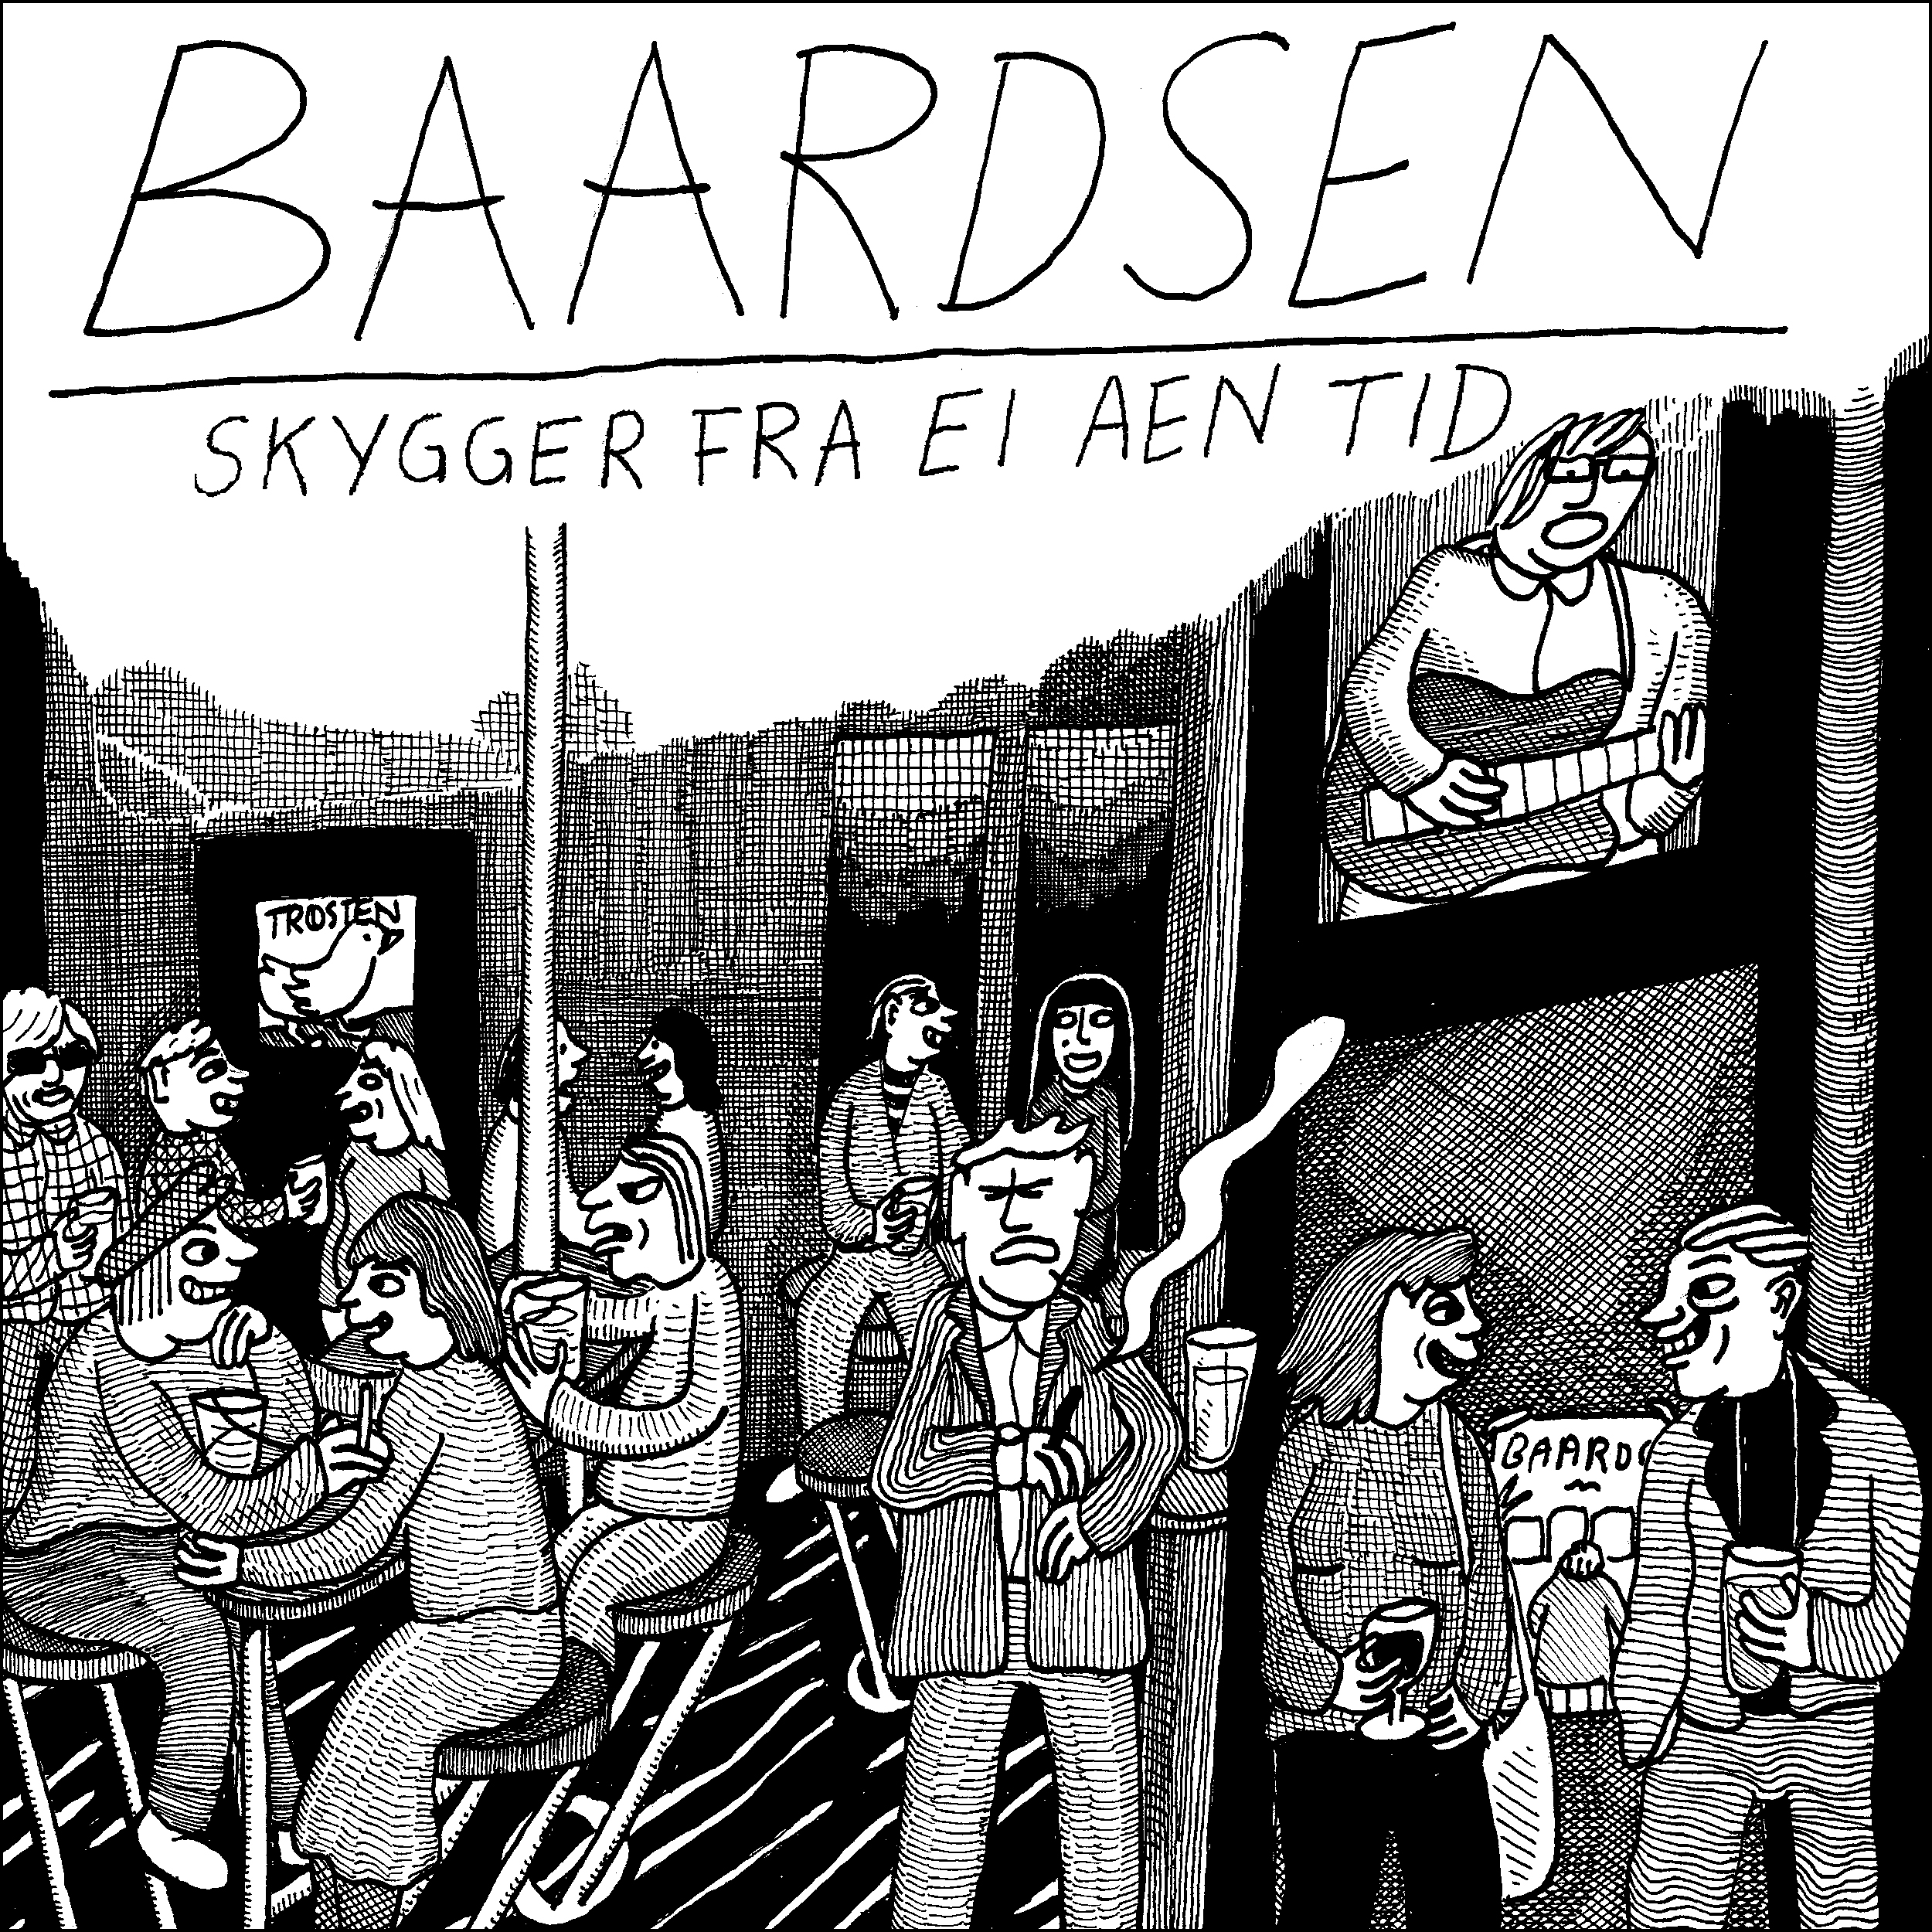 Baardsen_Skygger Fra Ei Aen Tid